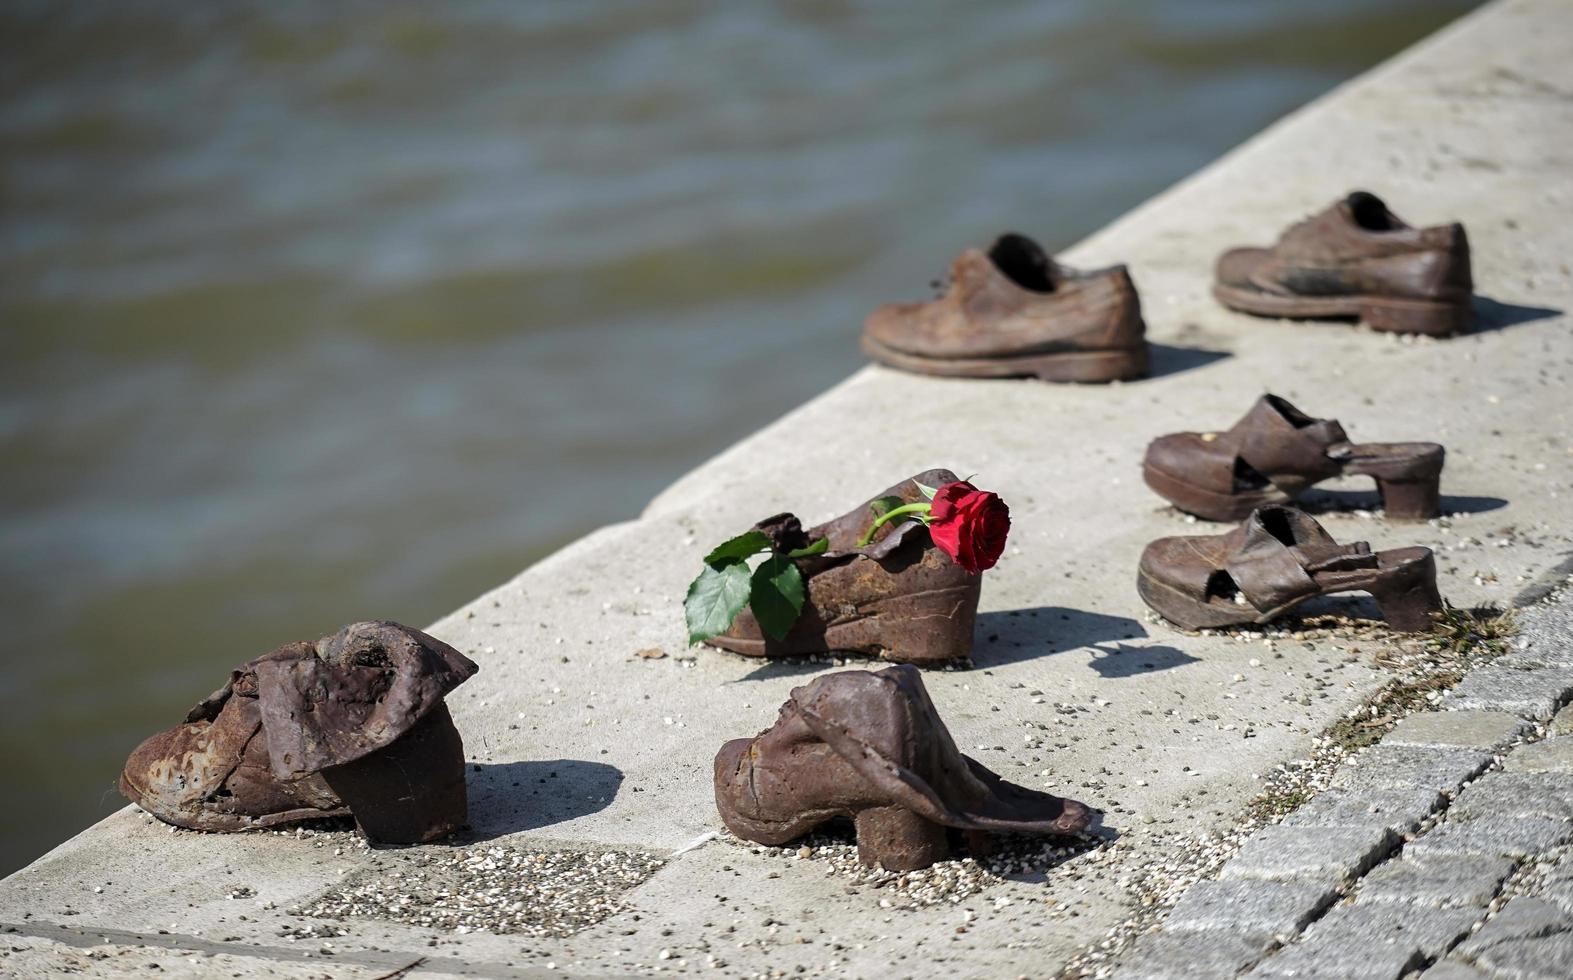 budapeste, hungria, 2014. sapato de ferro memorial aos judeus executados na segunda guerra mundial em budapeste foto